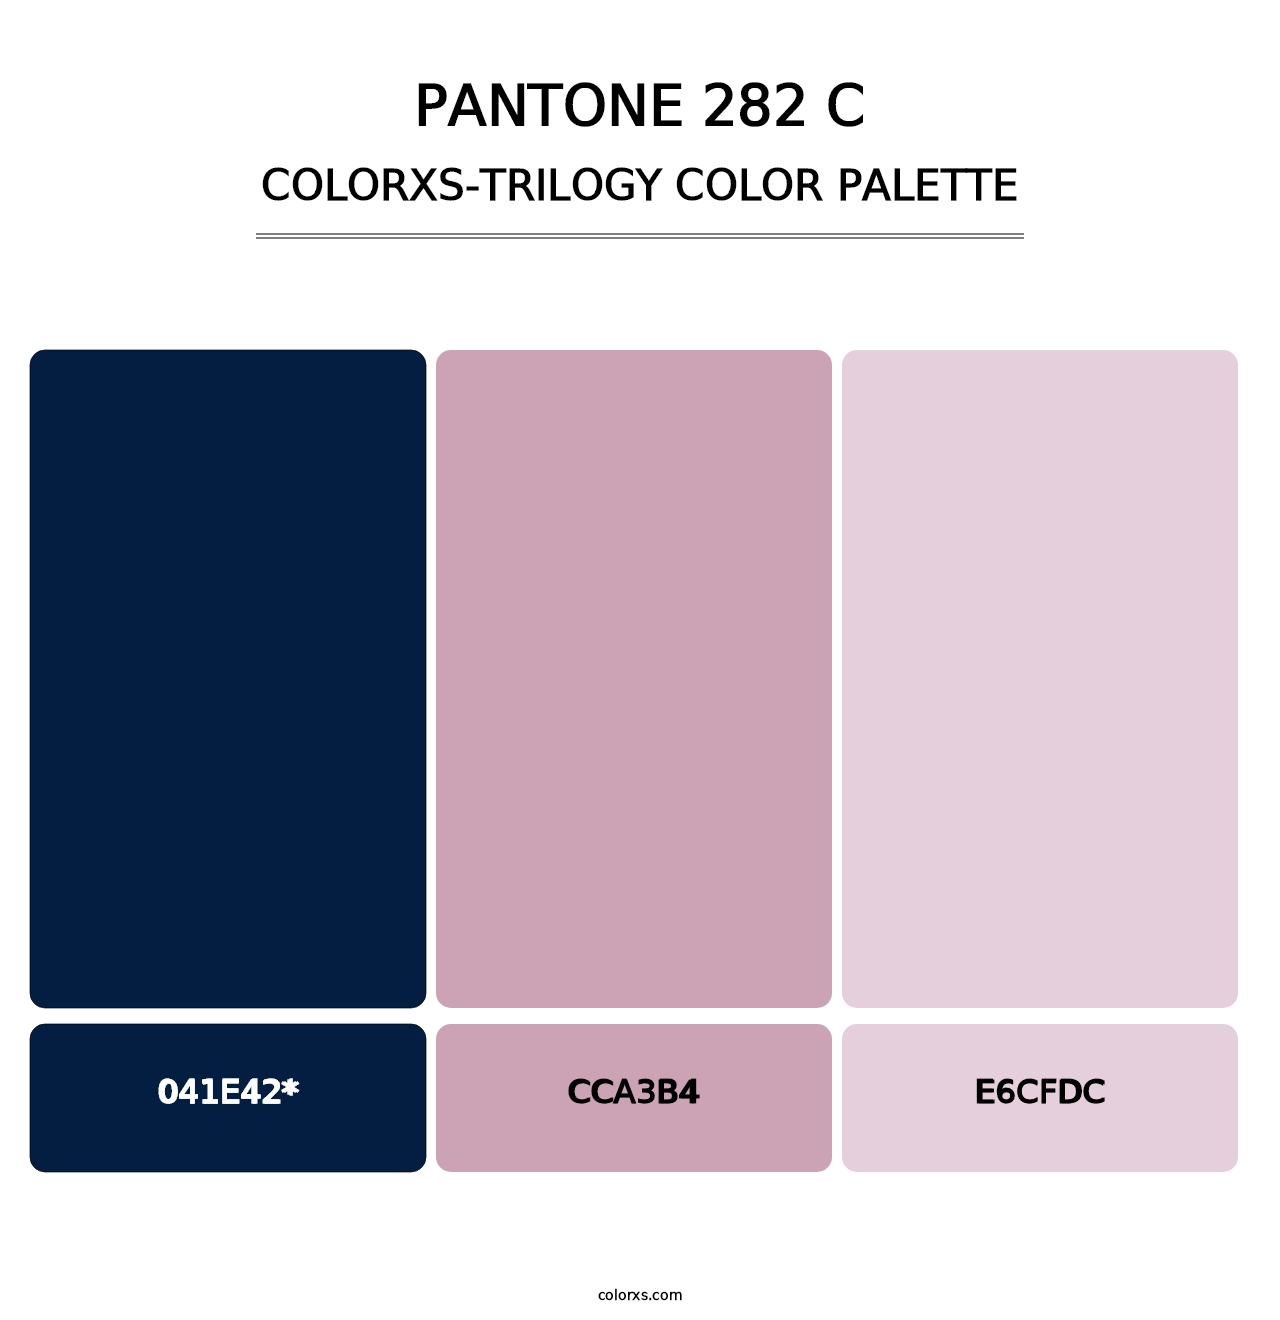 PANTONE 282 C - Colorxs Trilogy Palette